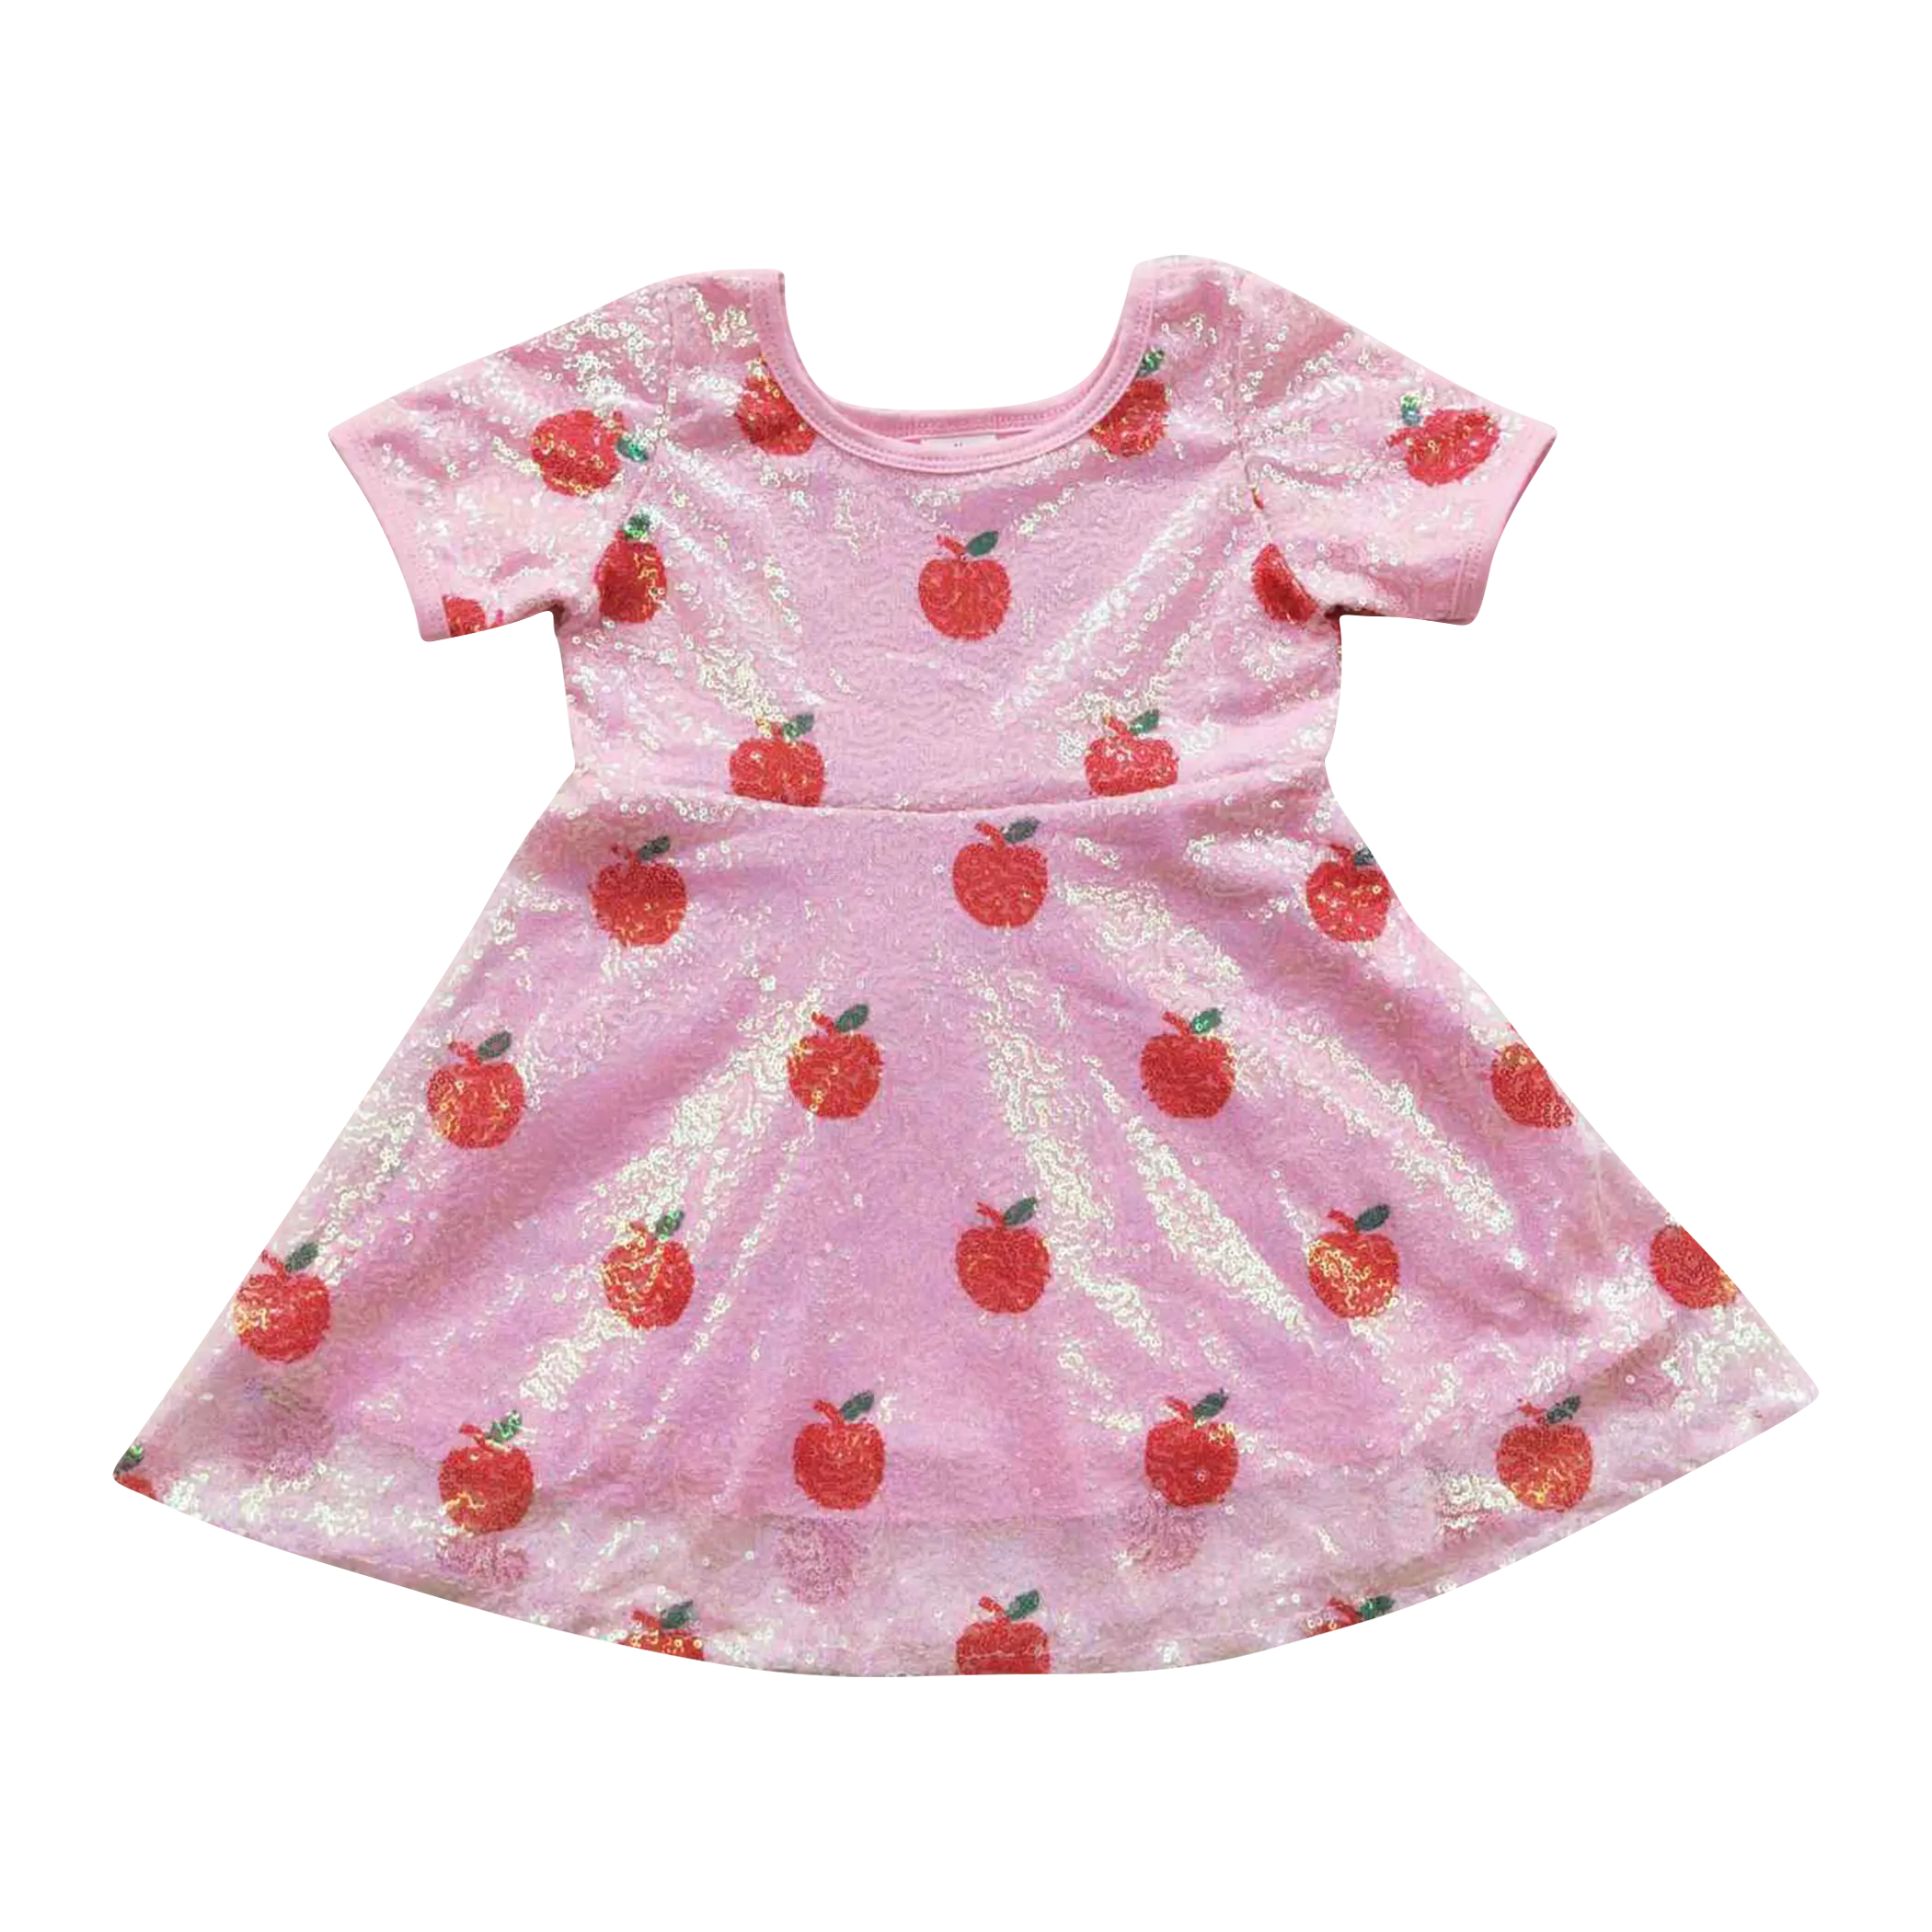 GSD0437 Red apple print pink tulle dress girl birthday dress children dress girls